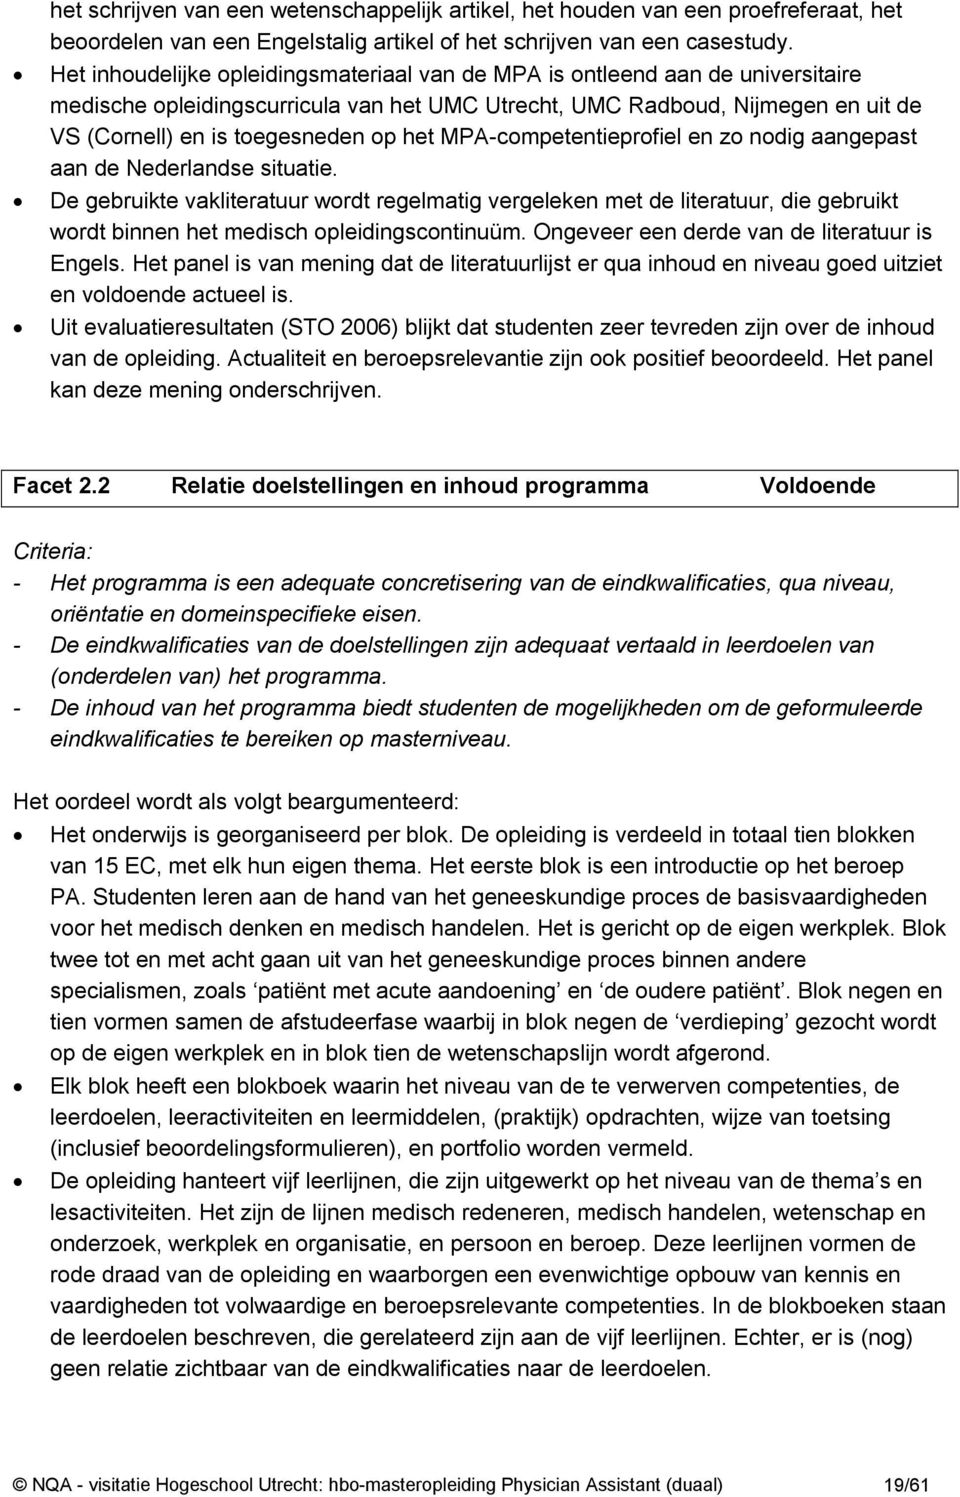 het MPA-competentieprofiel en zo nodig aangepast aan de Nederlandse situatie.